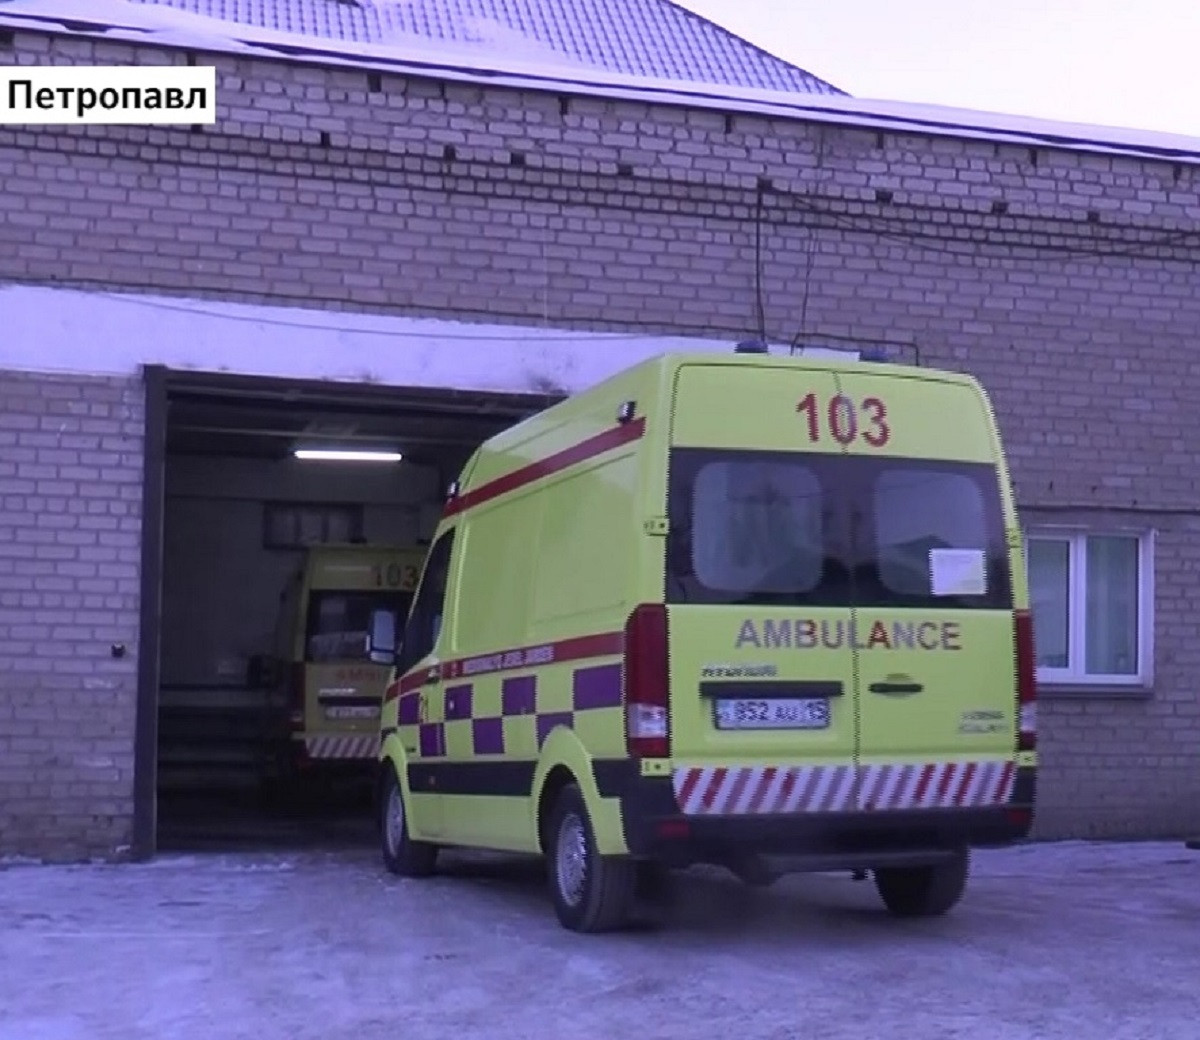 Областной центр скорой помощи в Петропавловске на грани разрушения